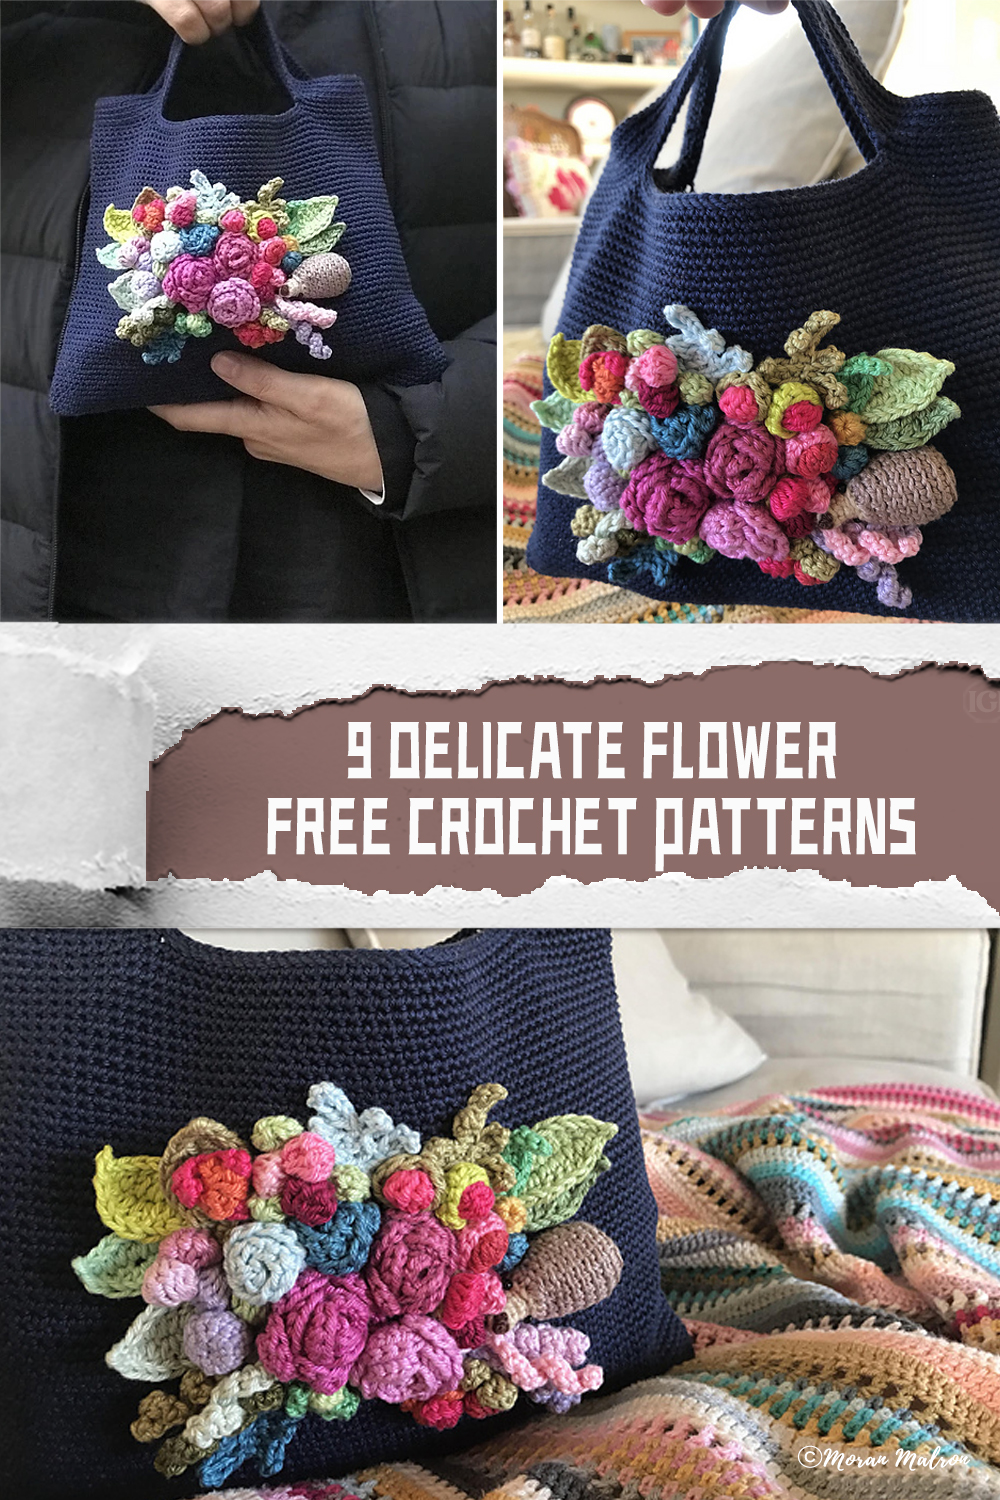 9 Delicate Flower FREE Crochet Patterns